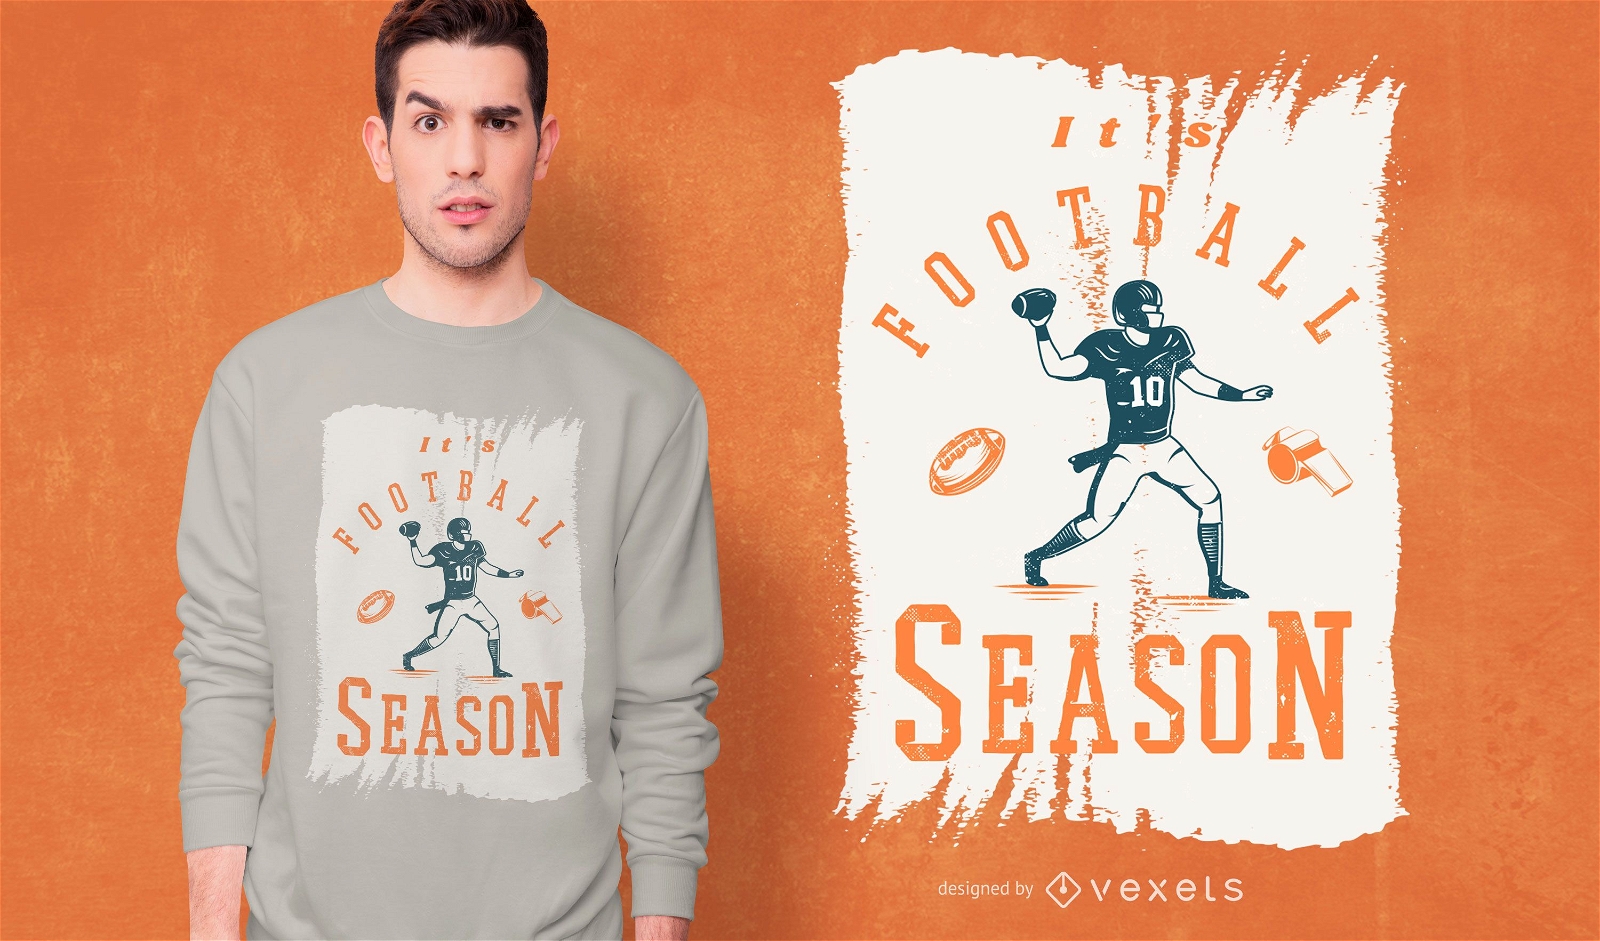 Es el dise?o de la camiseta de la temporada de f?tbol.